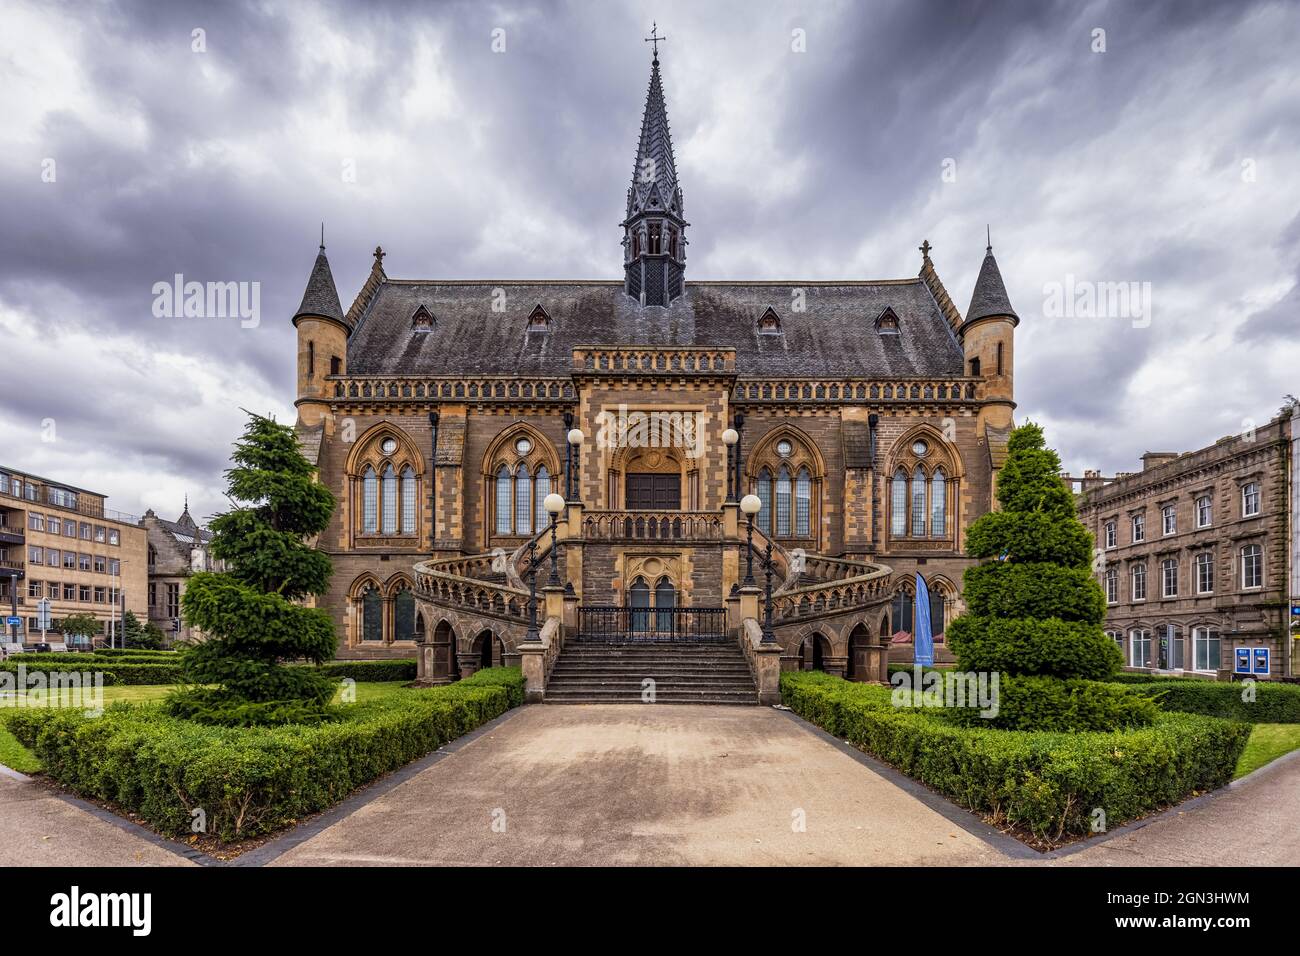 Die beeindruckende McManus Art Gallery & Museum in Dundee, Schottland. Stockfoto